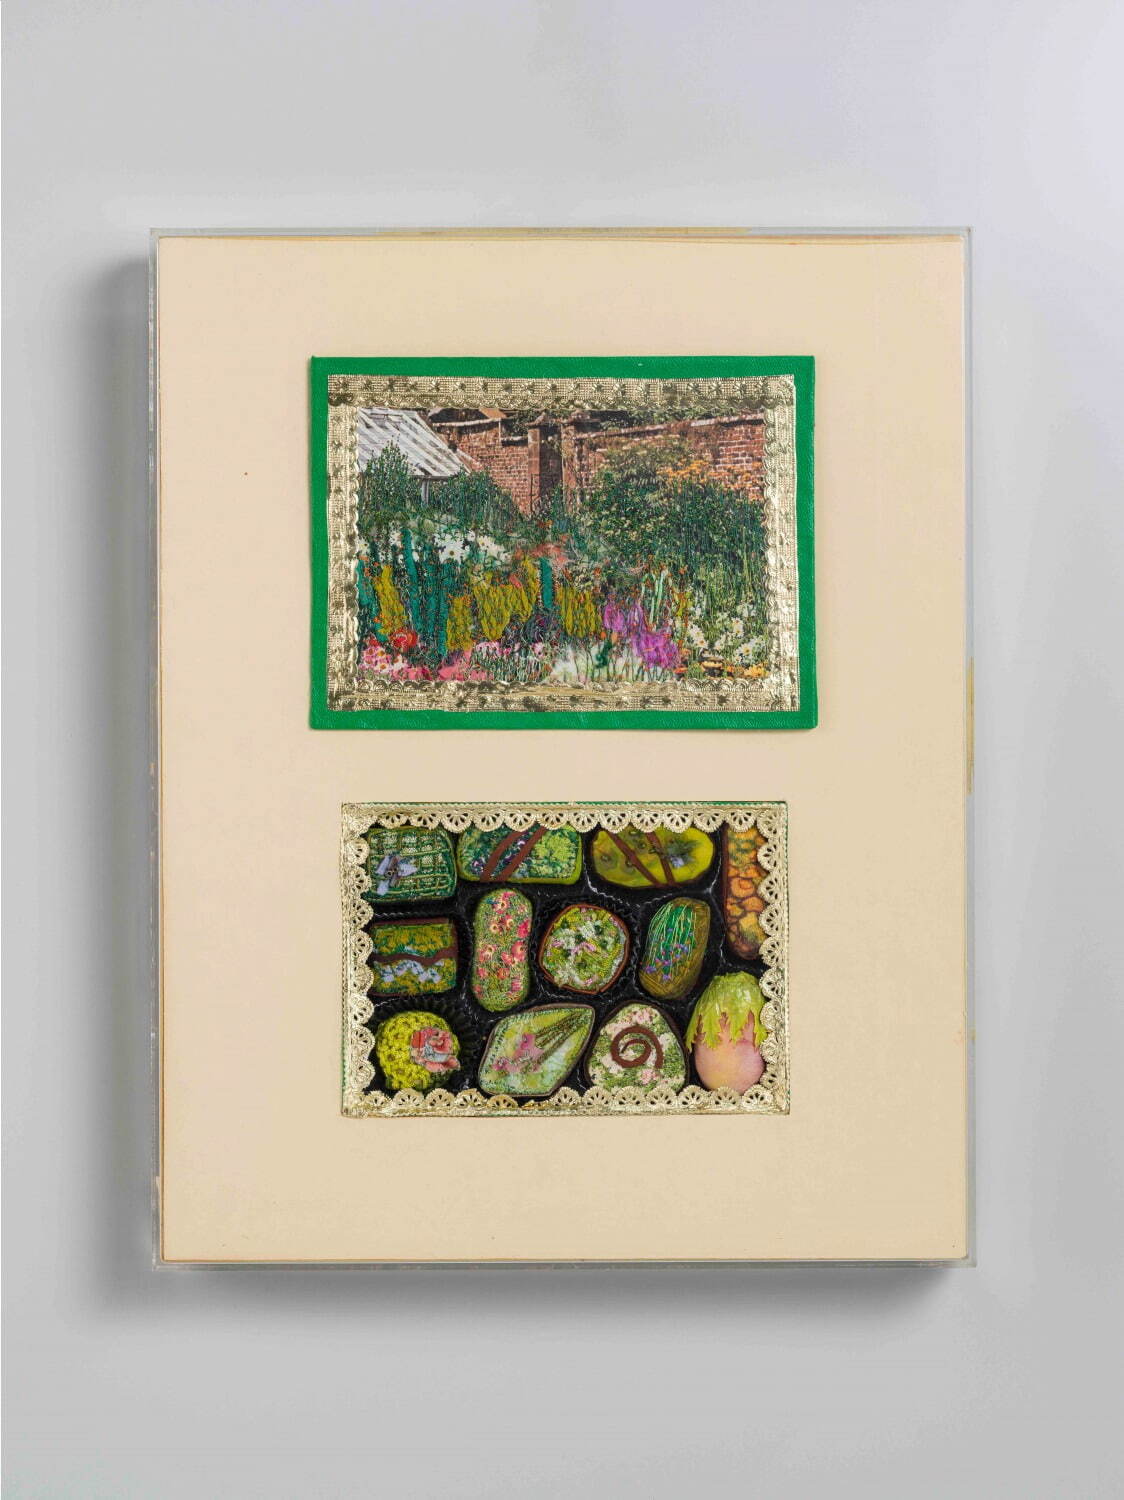 ミリー・スティーヴンス《カードナーズ・チョコレートの箱》1981 絹・手とミシンによる刺繍 35×27.5cm 京都国立近代美術館所蔵